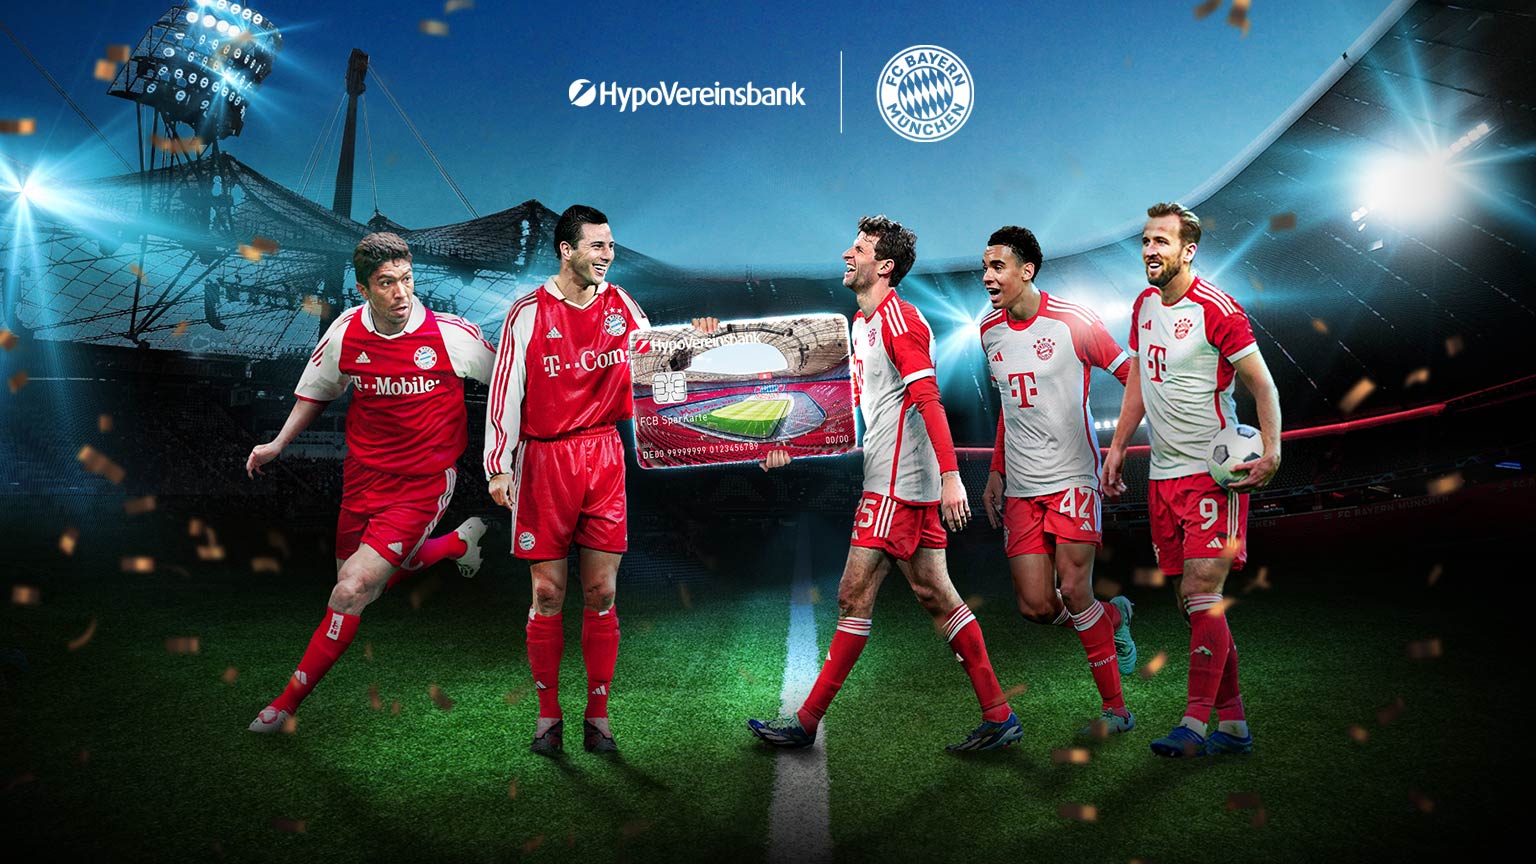 Keyvisual von der Partnerschaft von HVB und dem FCB. Es sind alte Spieler sowie aktuelle Spieler der Mannschaft vom FC Bayern zusehen, wie sie in den Müncher Stadien eine große HypoVereinsbank Karte zusammen halten.